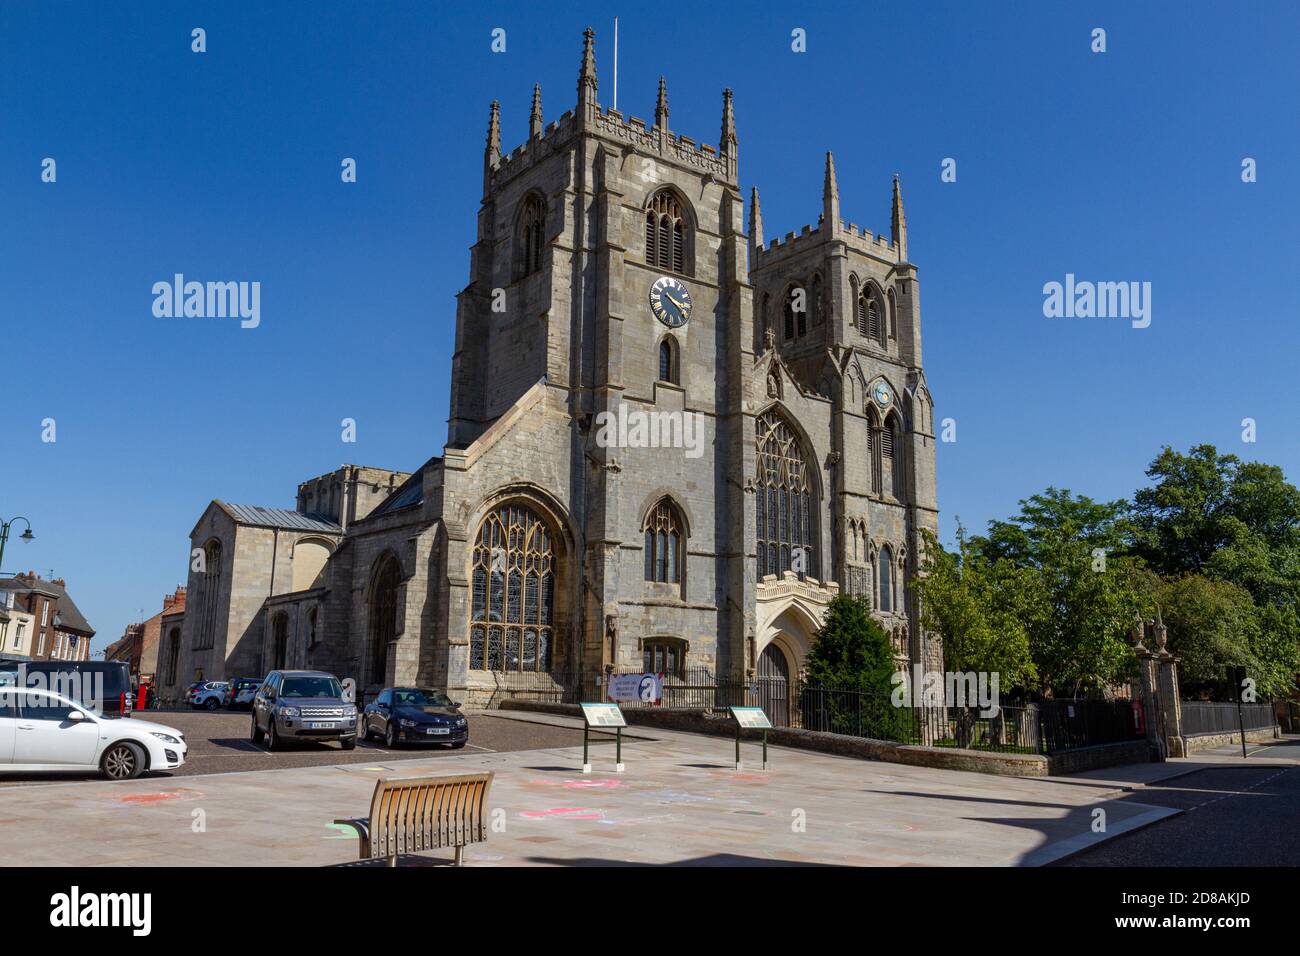 King's Lynn Minster (St Margaret's Church), King's Lynn, Norfolk, England. Stock Photo